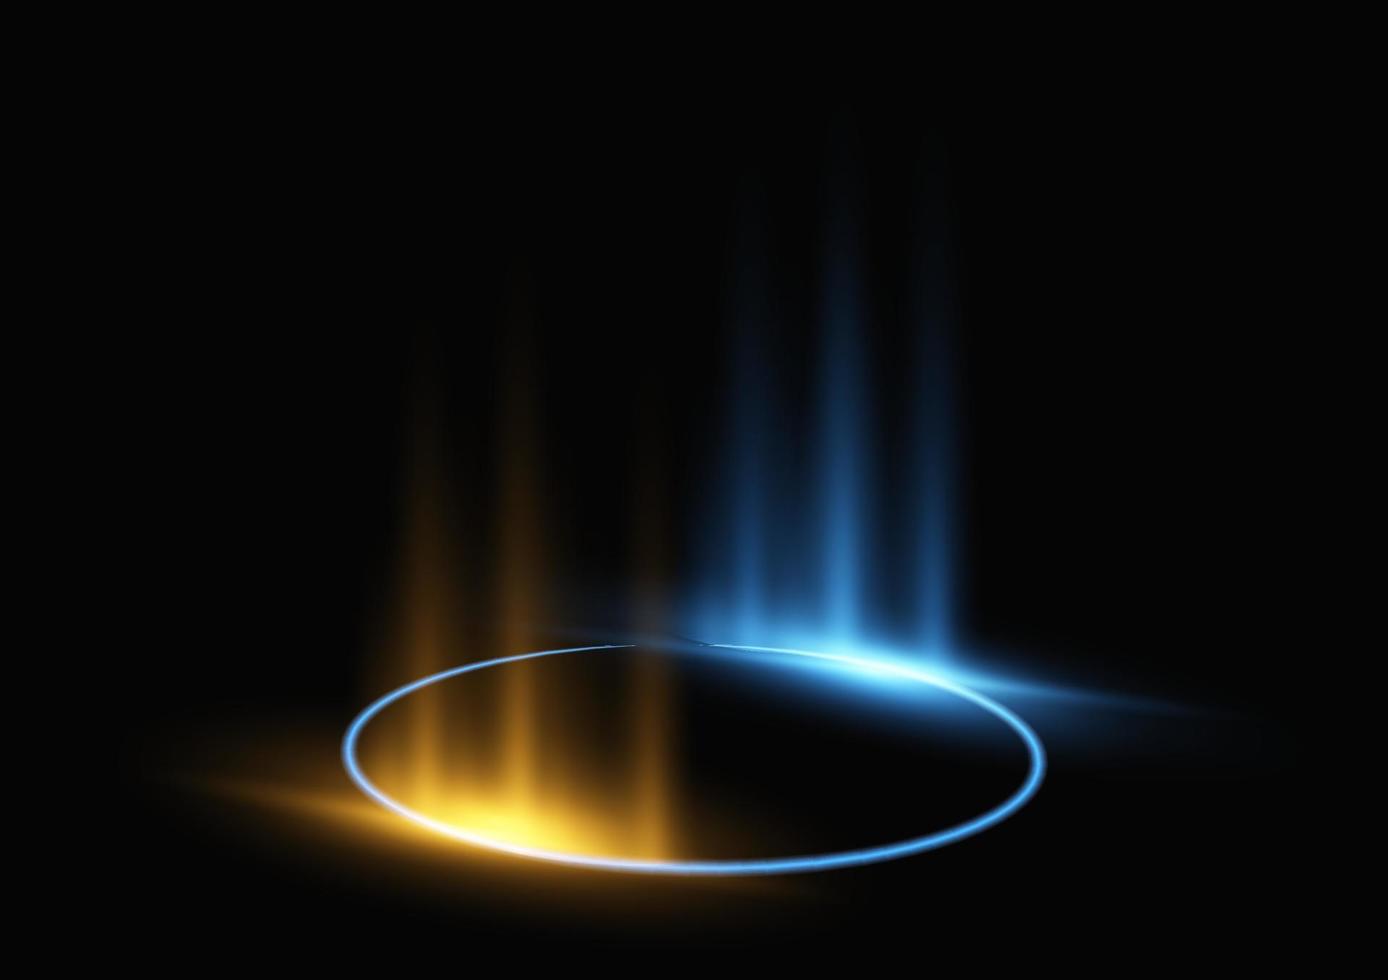 abstraktes modernes Kreislicht, Ringtechnologieeffekt auf schwarzer Hintergrundvektorillustration. vektor